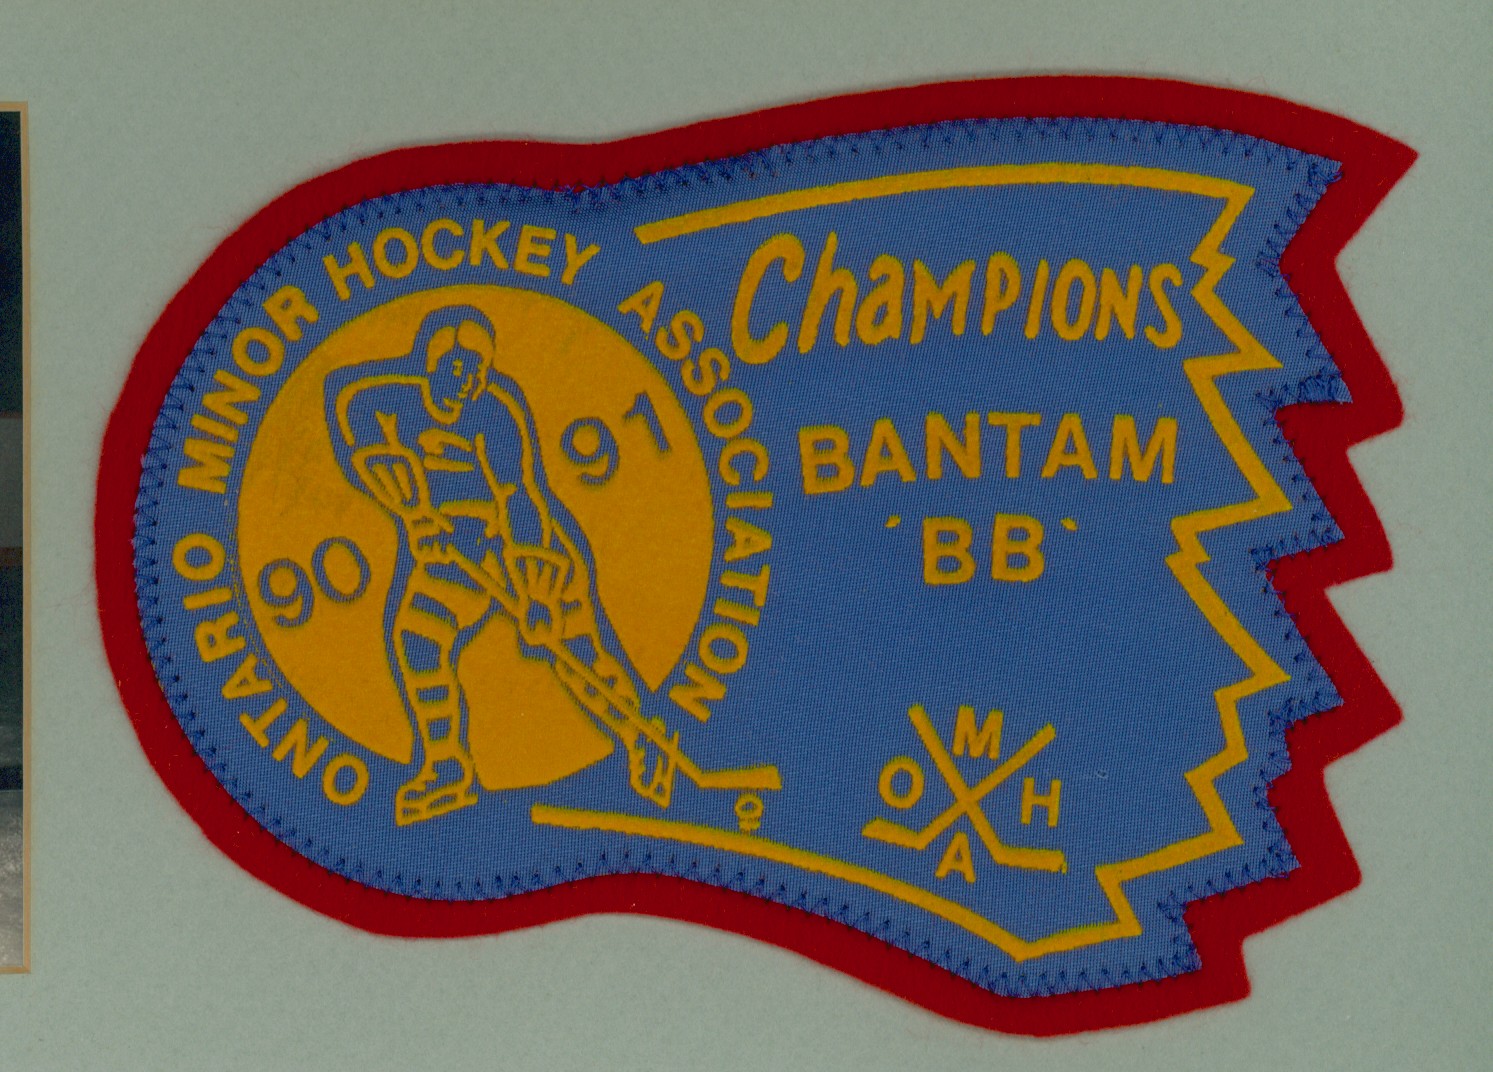 90-91 Ontario Bantam Champions crest